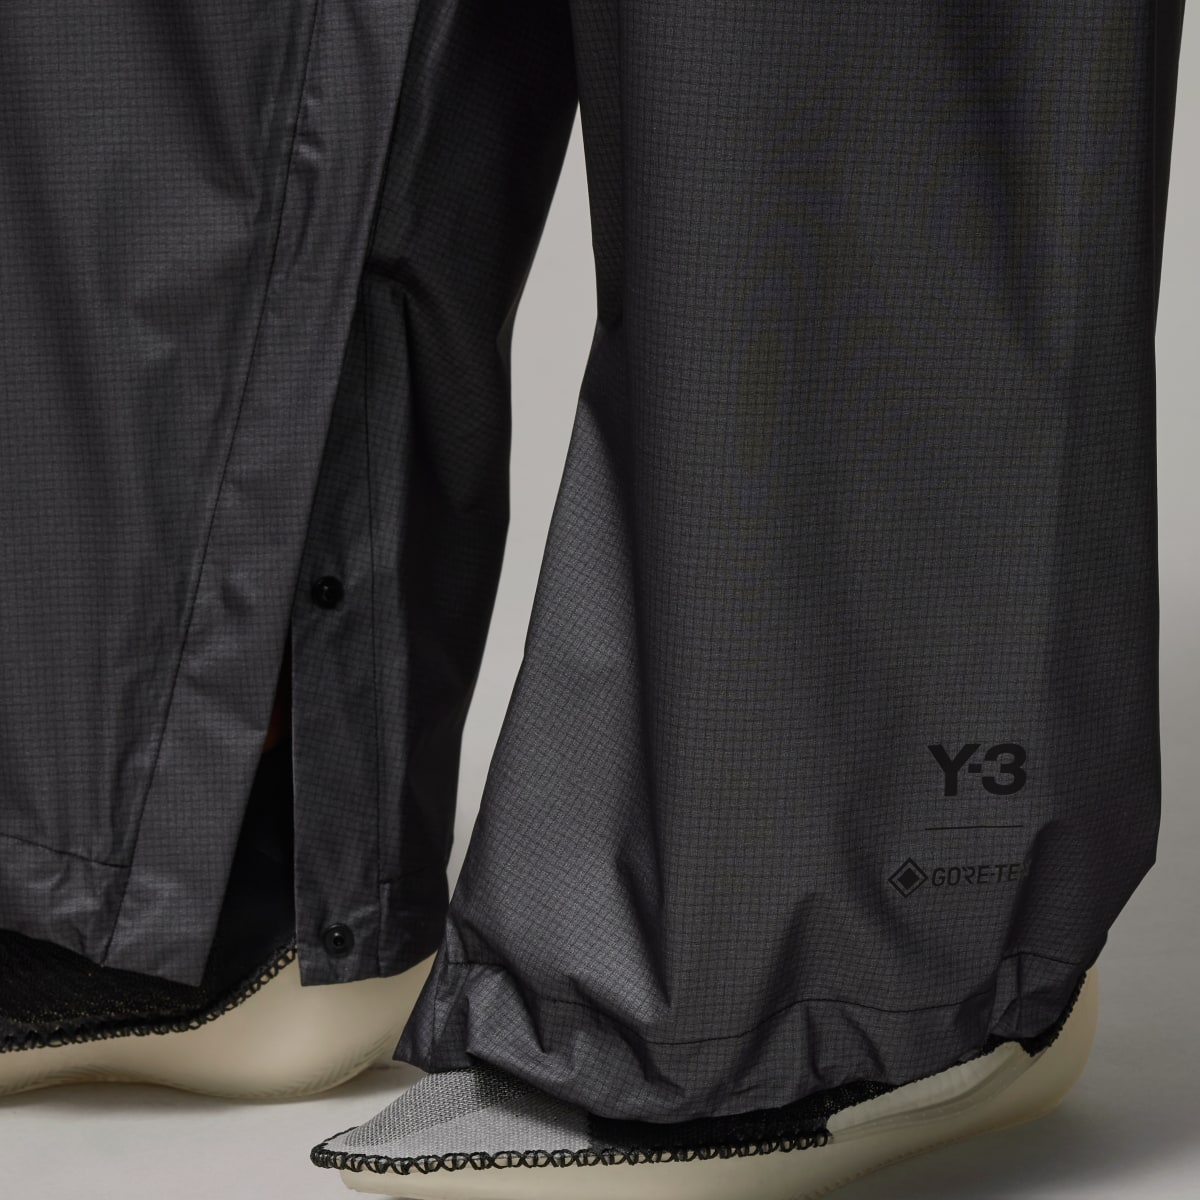 Adidas Spodnie Y-3 GORE-TEX. 8